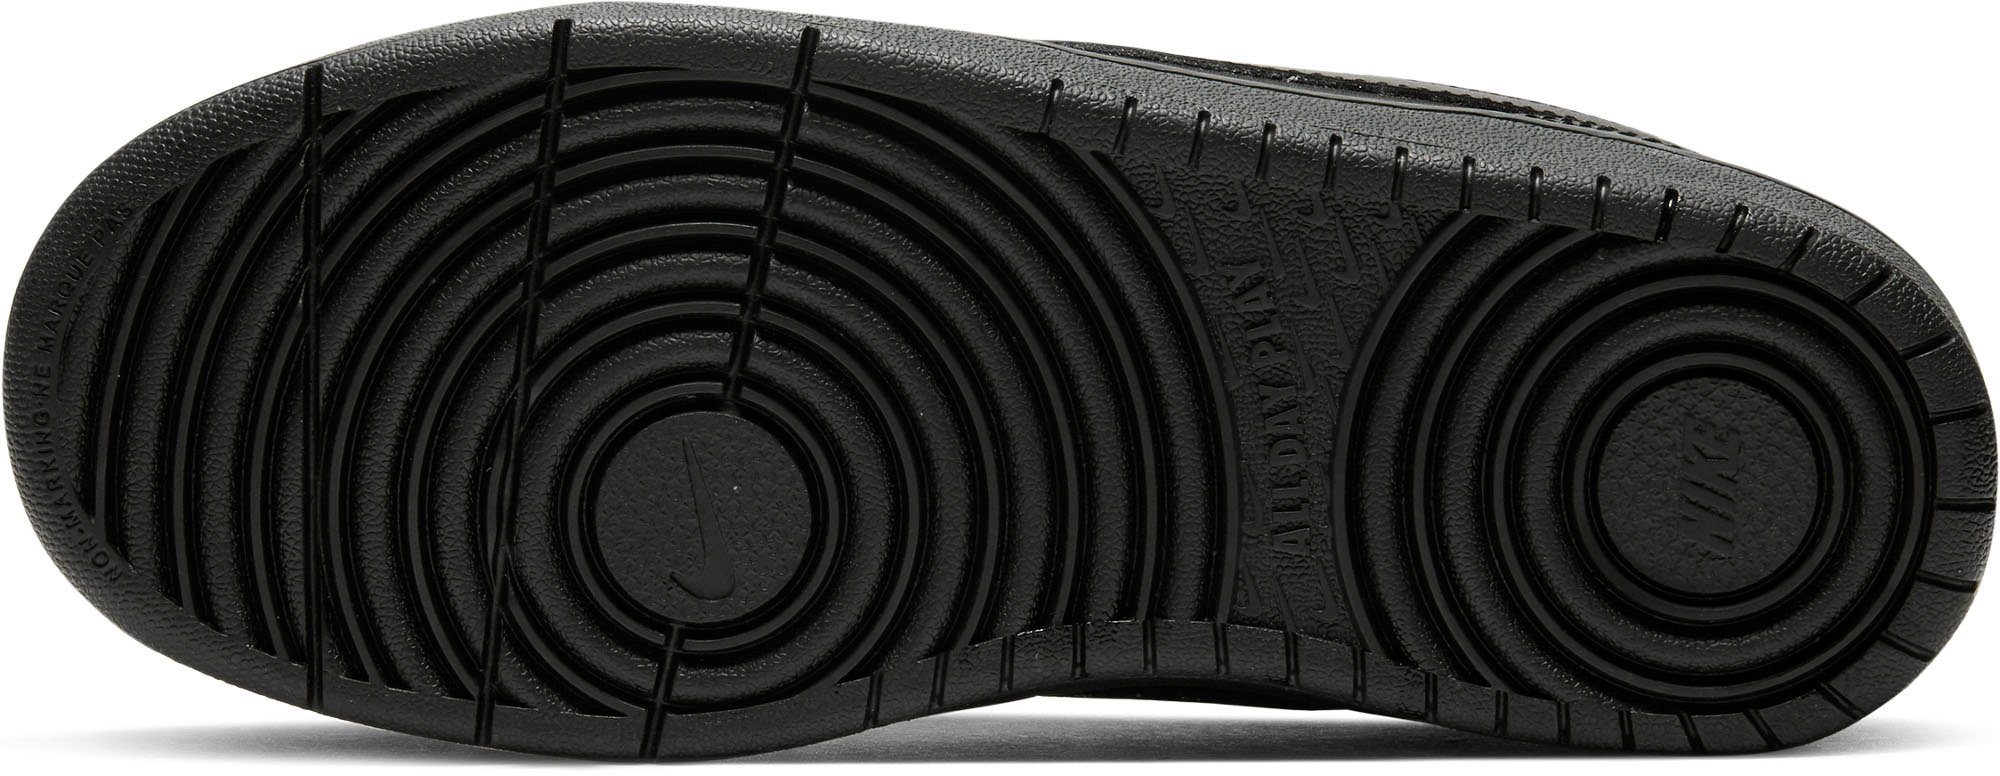 den Sportswear 1 Sneaker Force Nike Design auf Spuren Air Borough schwarz Court des